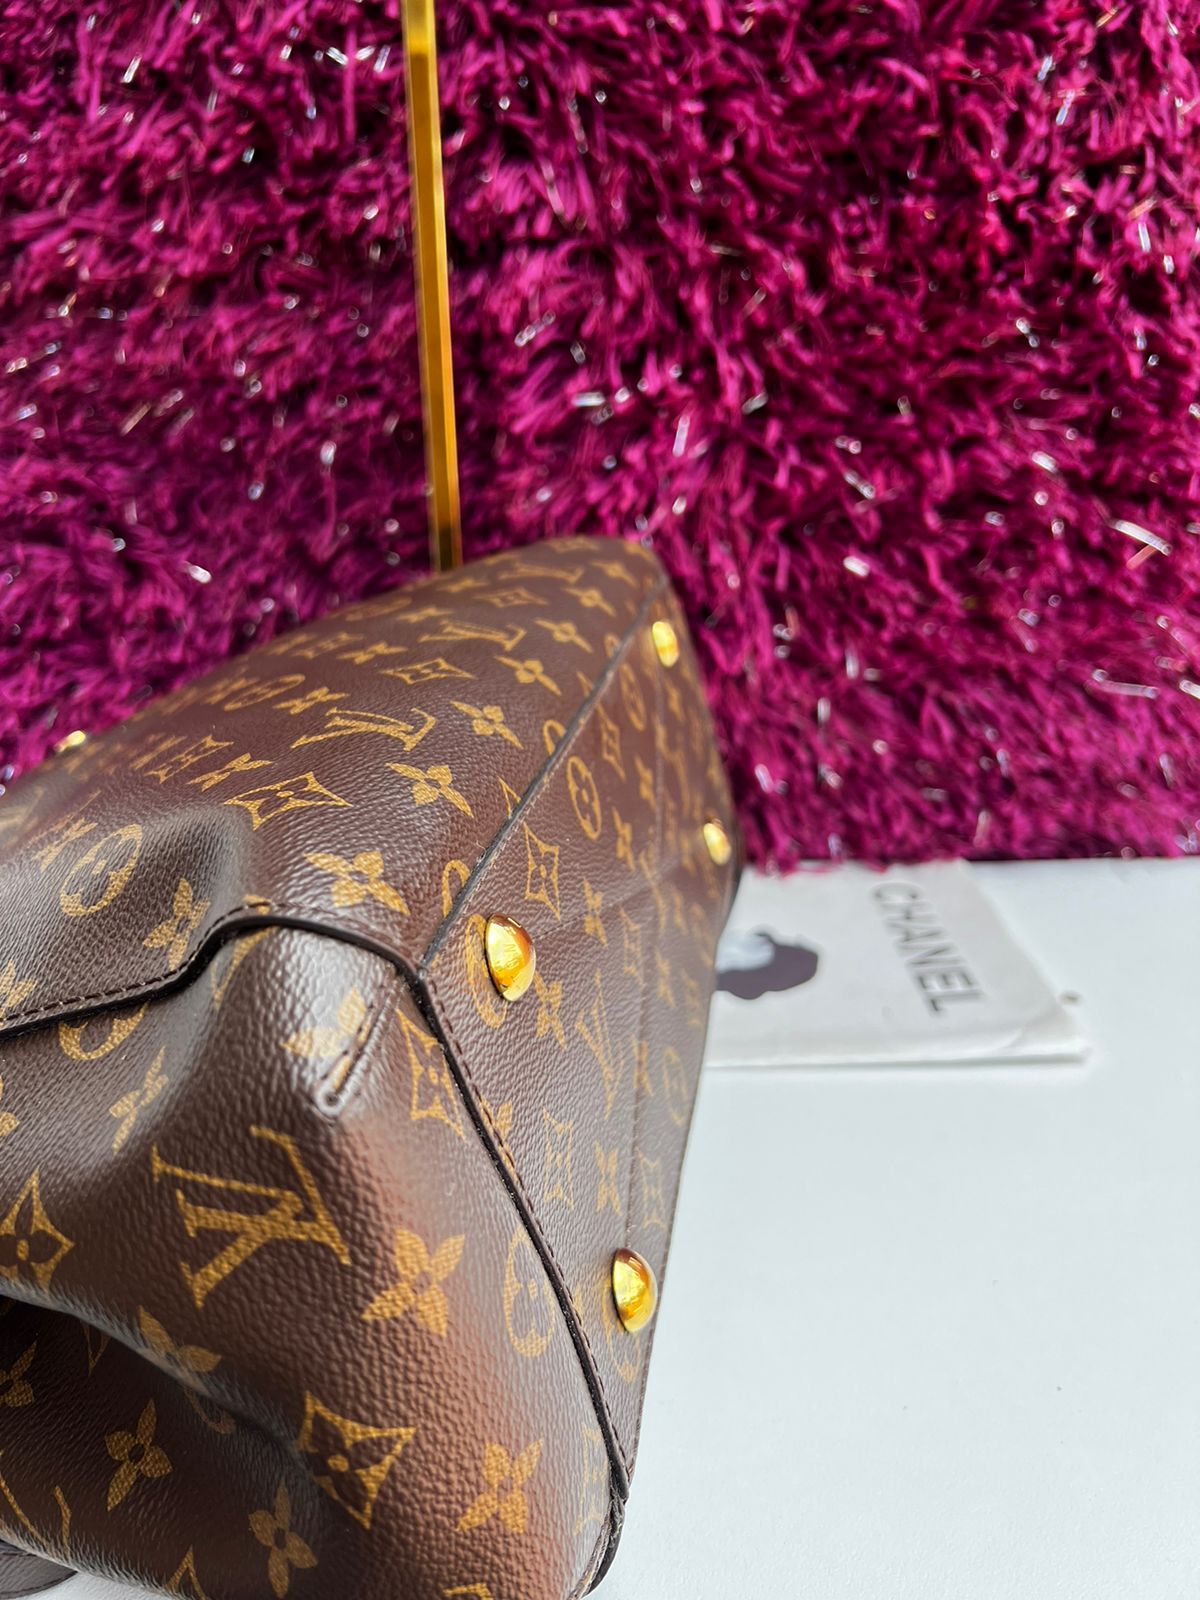 Louis Vuitton Classic Shoulder Hand Bag